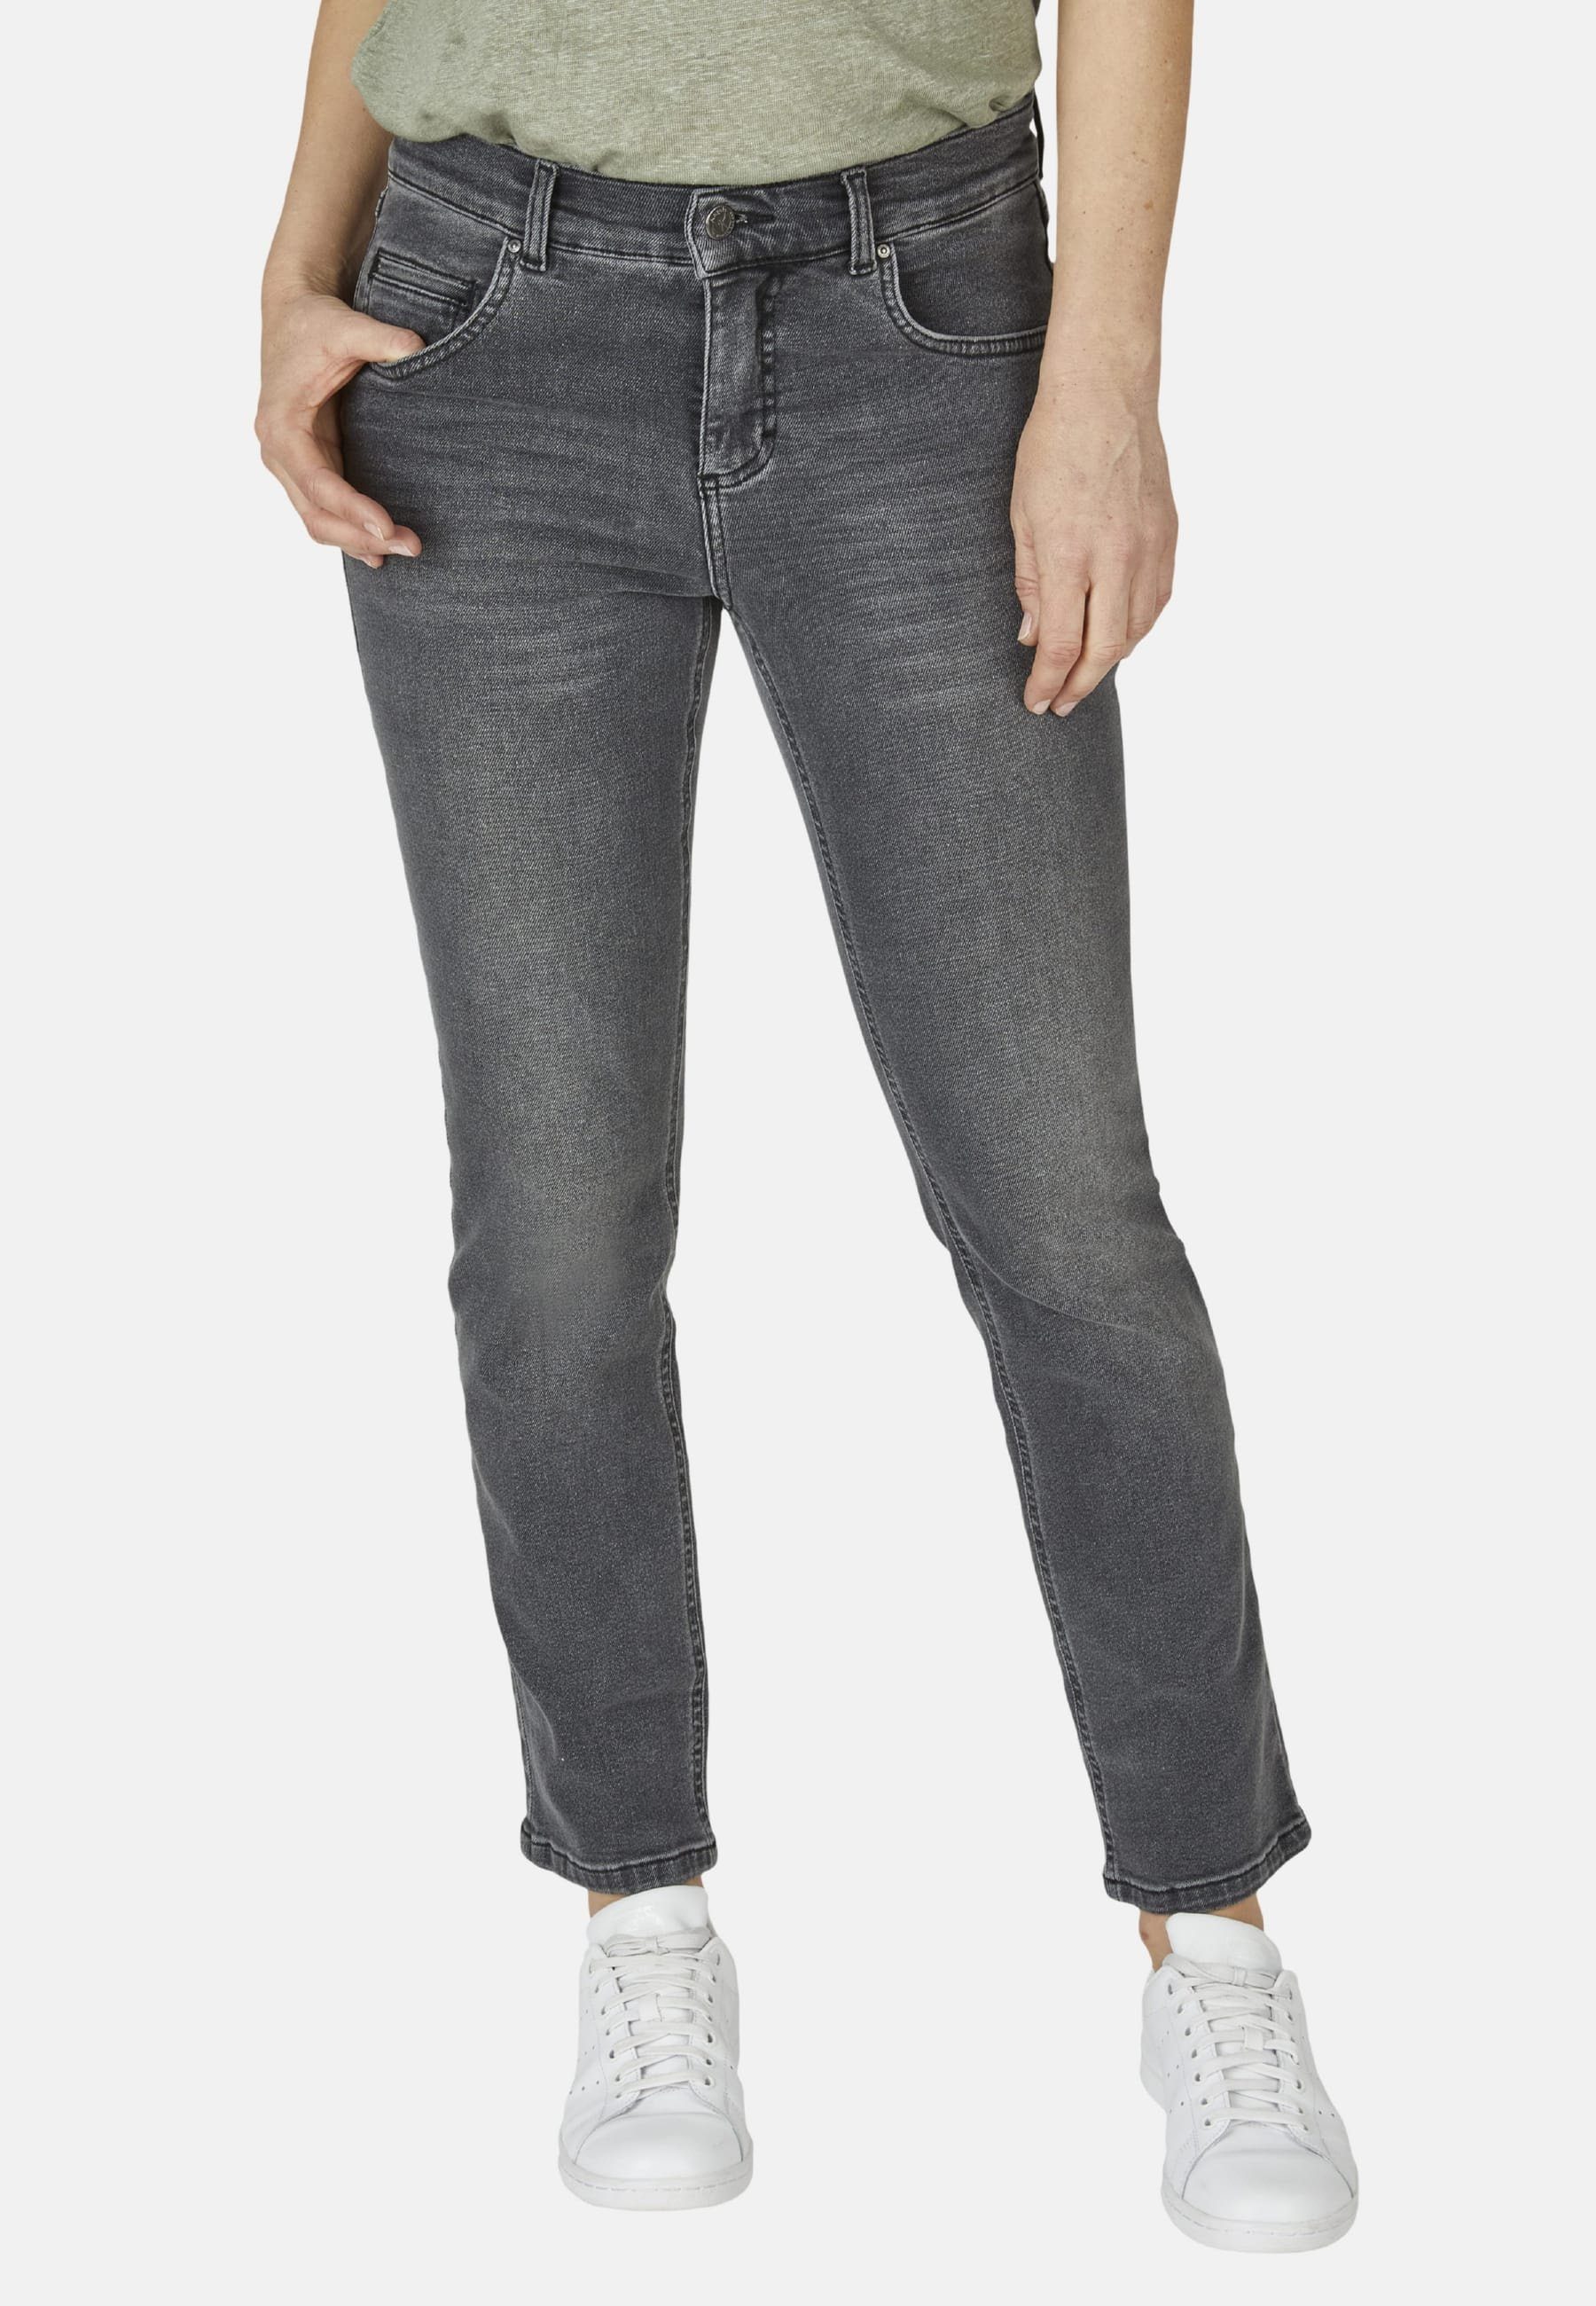 ANGELS Straight-Jeans Jeans Cici mit mit geradem Used-Waschung Label-Applikationen, Fit Bein mit Slim